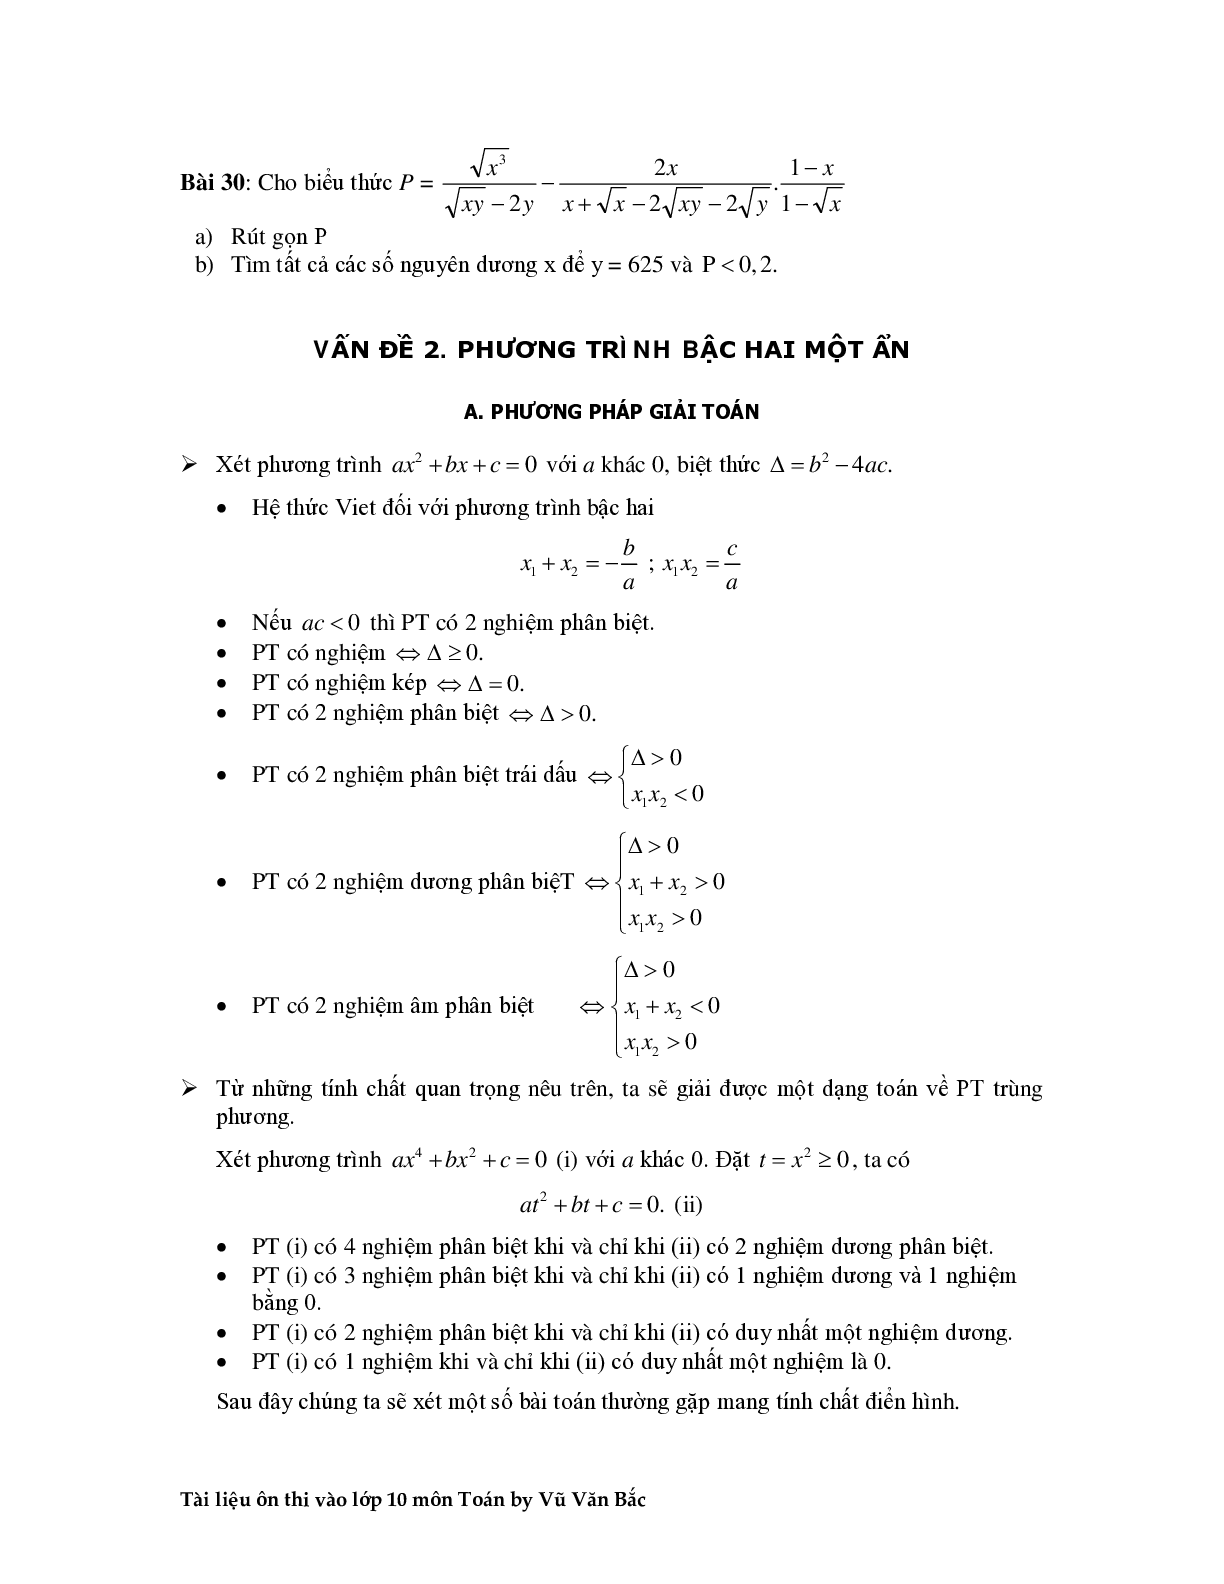 Tài liệu ôn thi vào lớp 10 môn toán (trang 8)